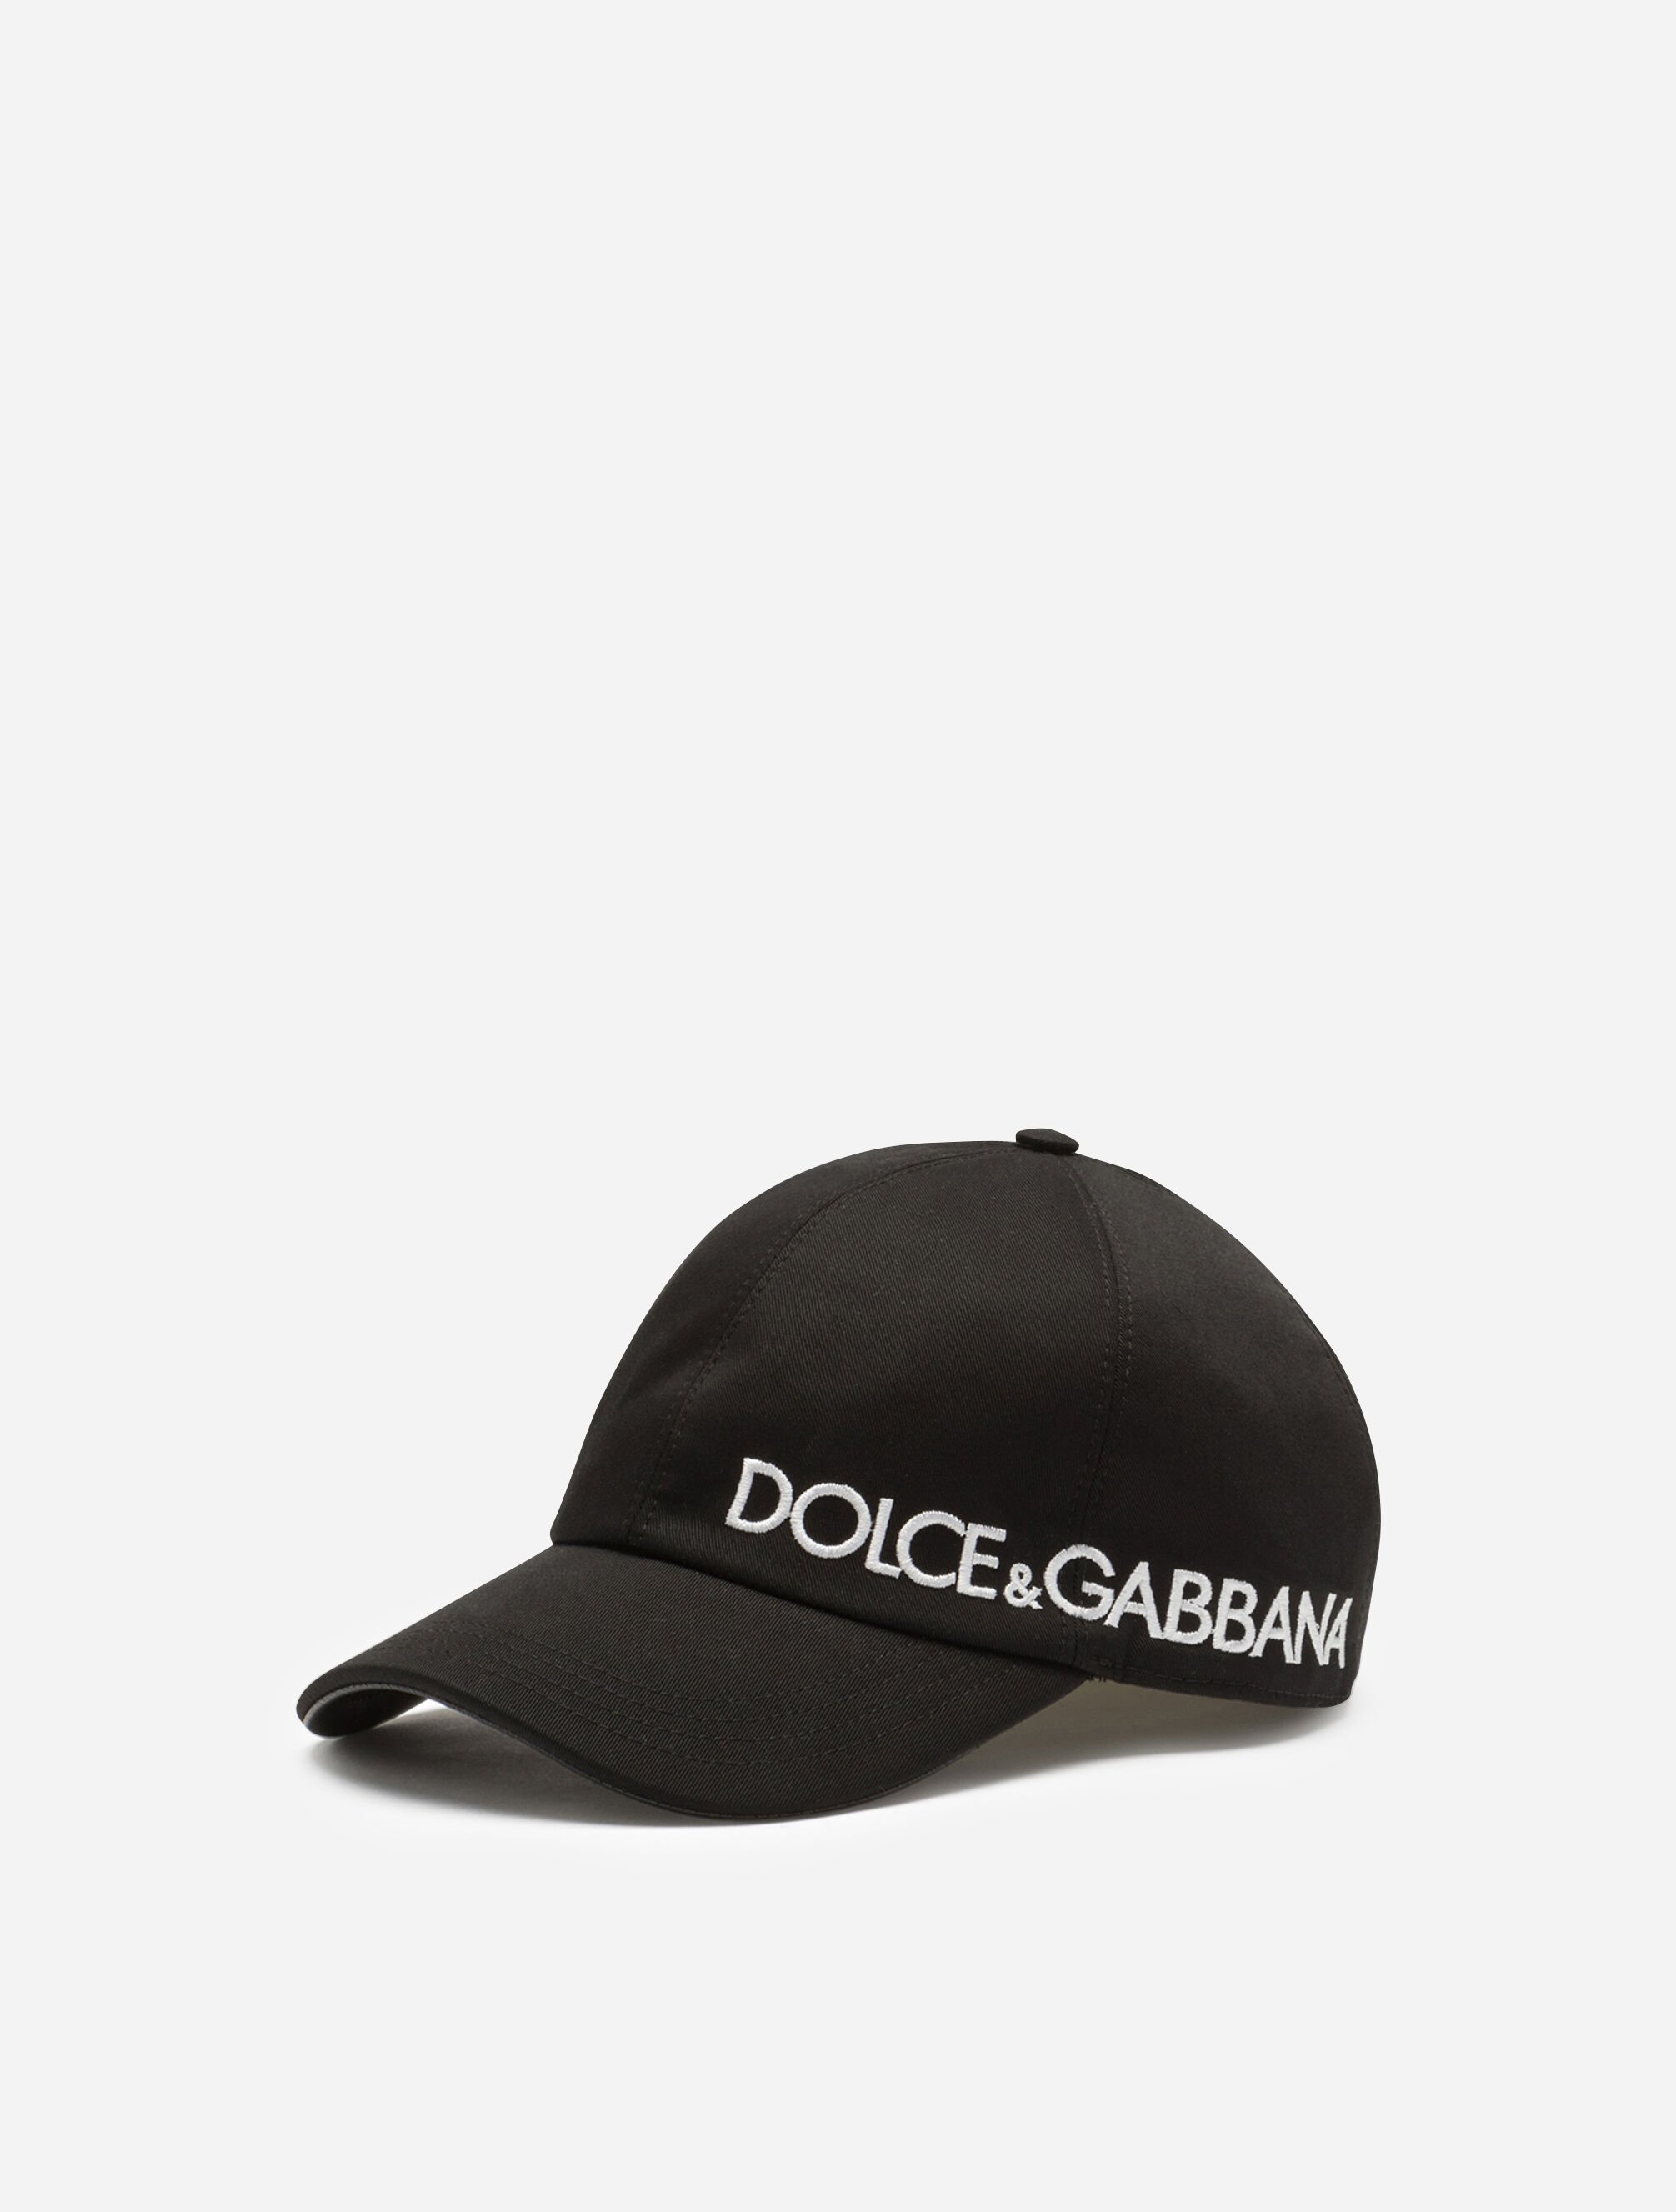 Dolce & Gabbana Dolce&Gabbana baseball cap with embroidery Green GH874ZFUFJU